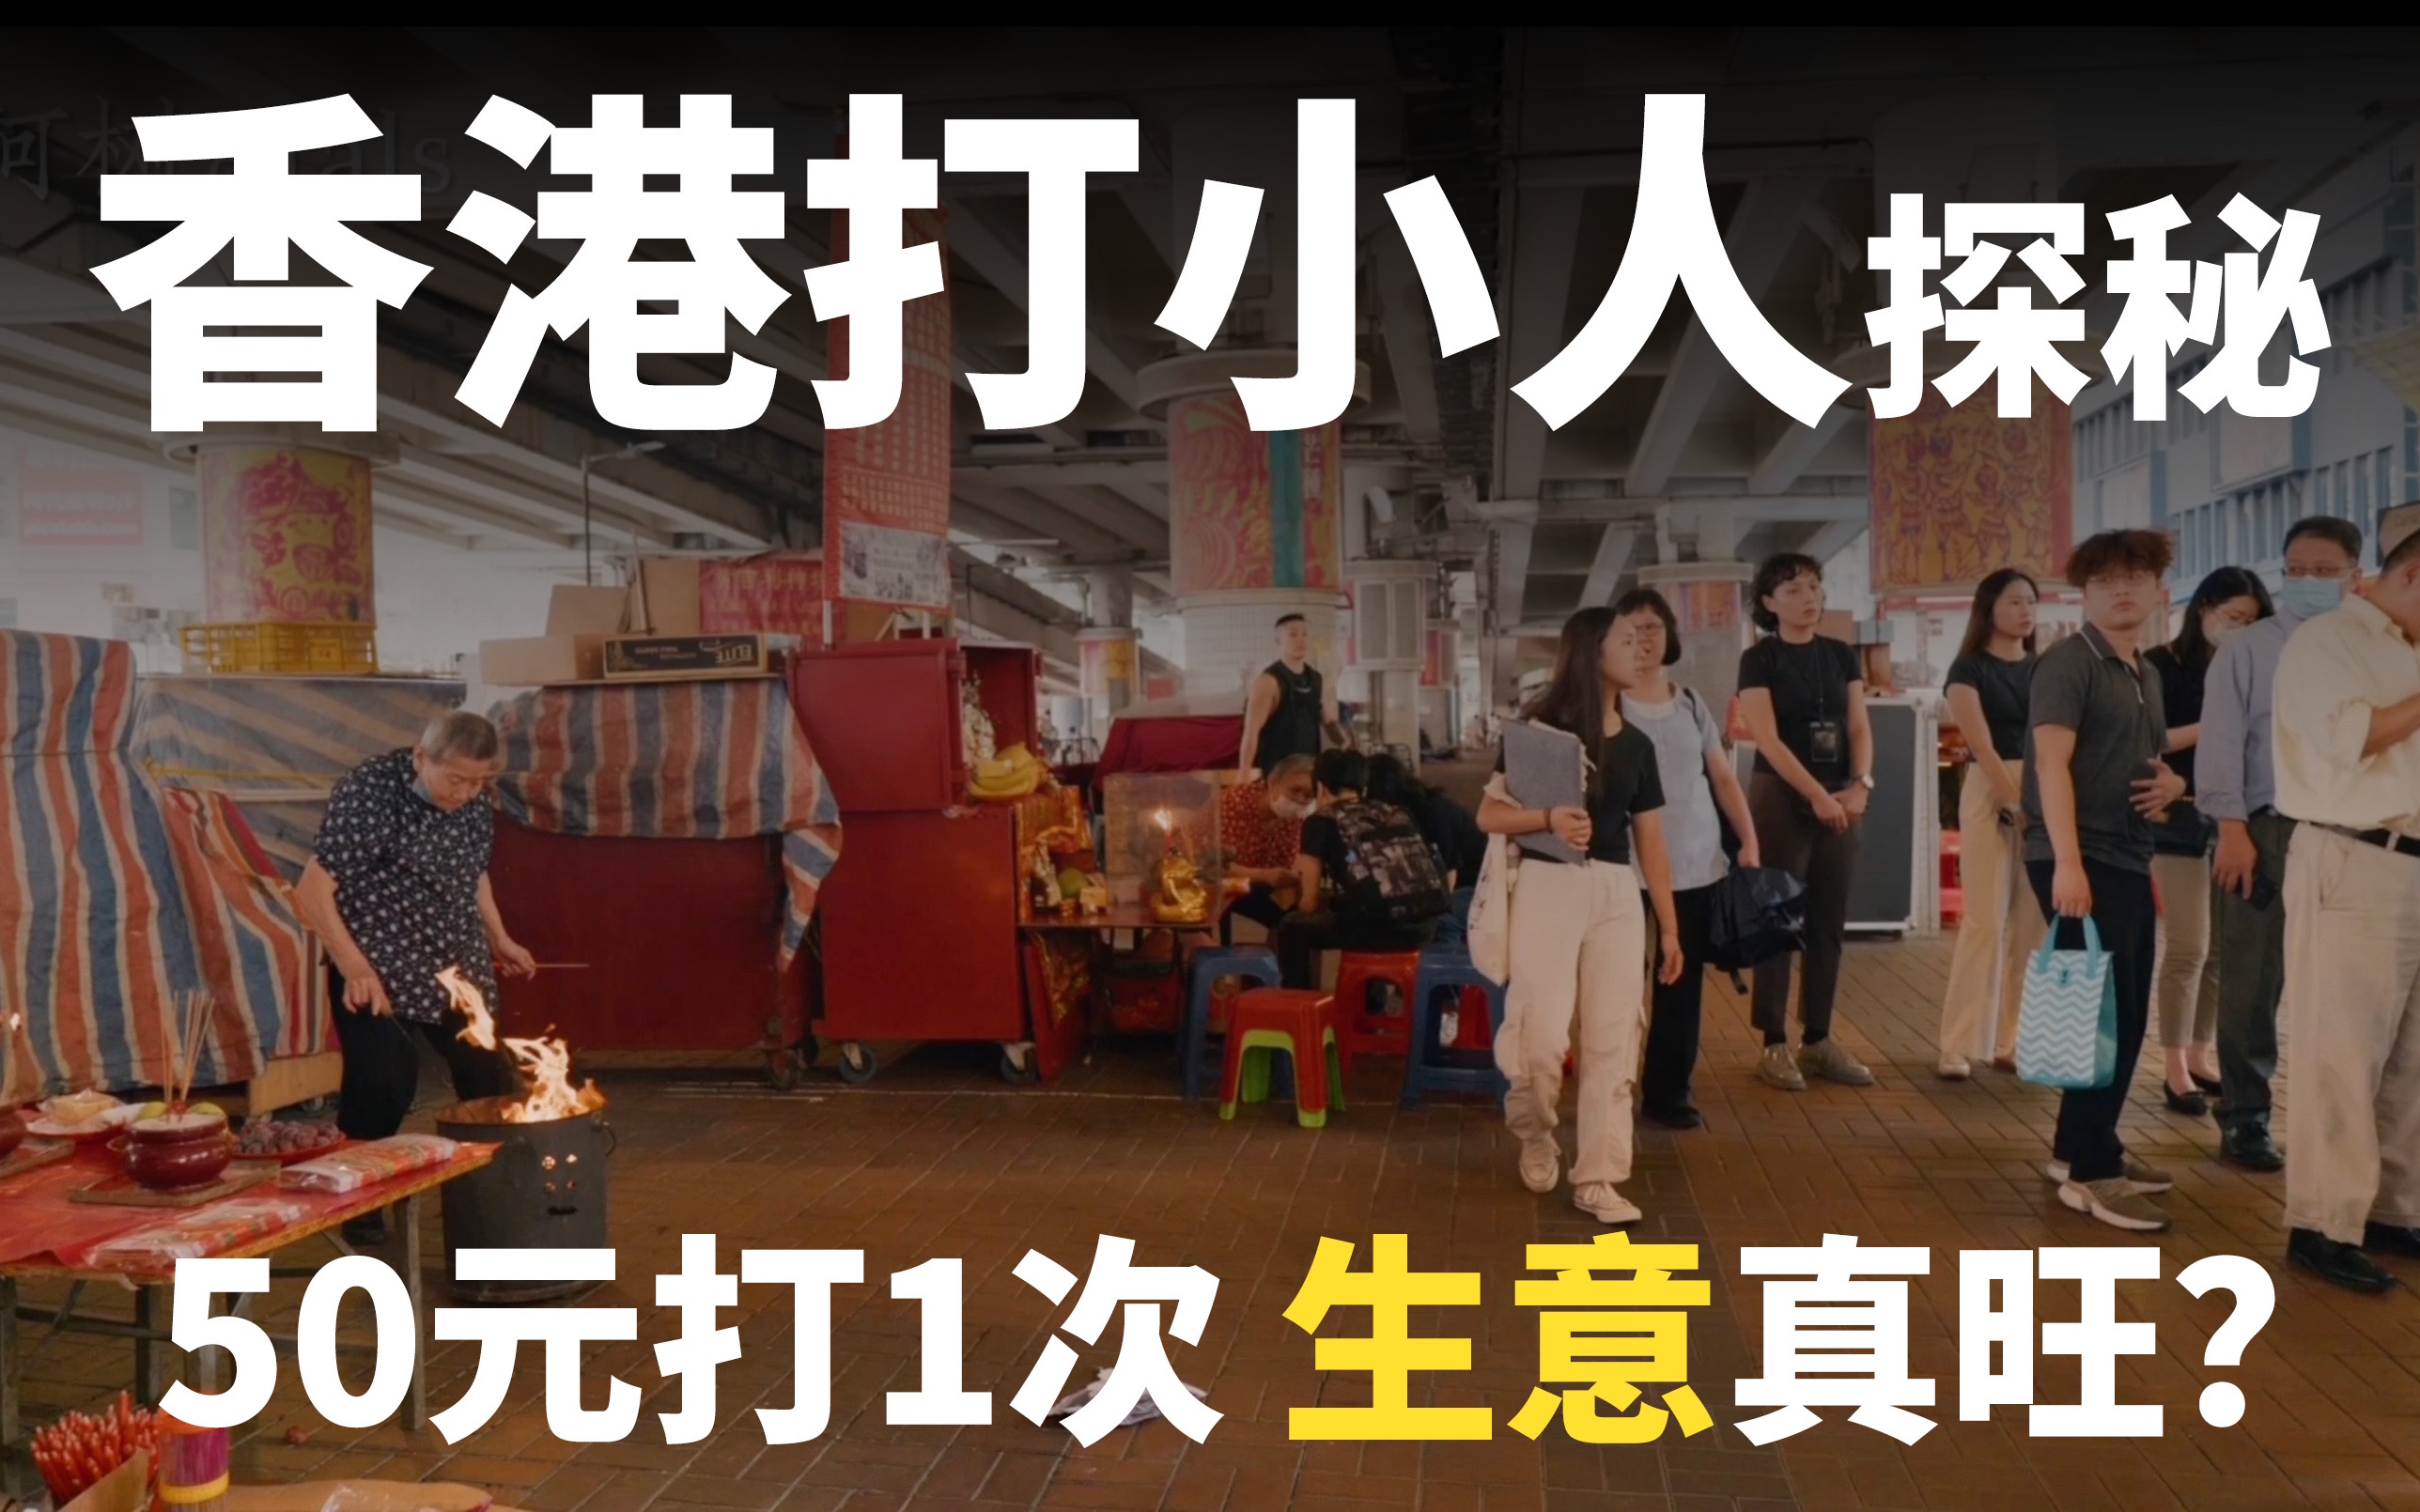 【香港打小人】銅鑼灣鵝頸橋「打小人」流程、收費多少錢 - 金大佛的奪門而出家網誌